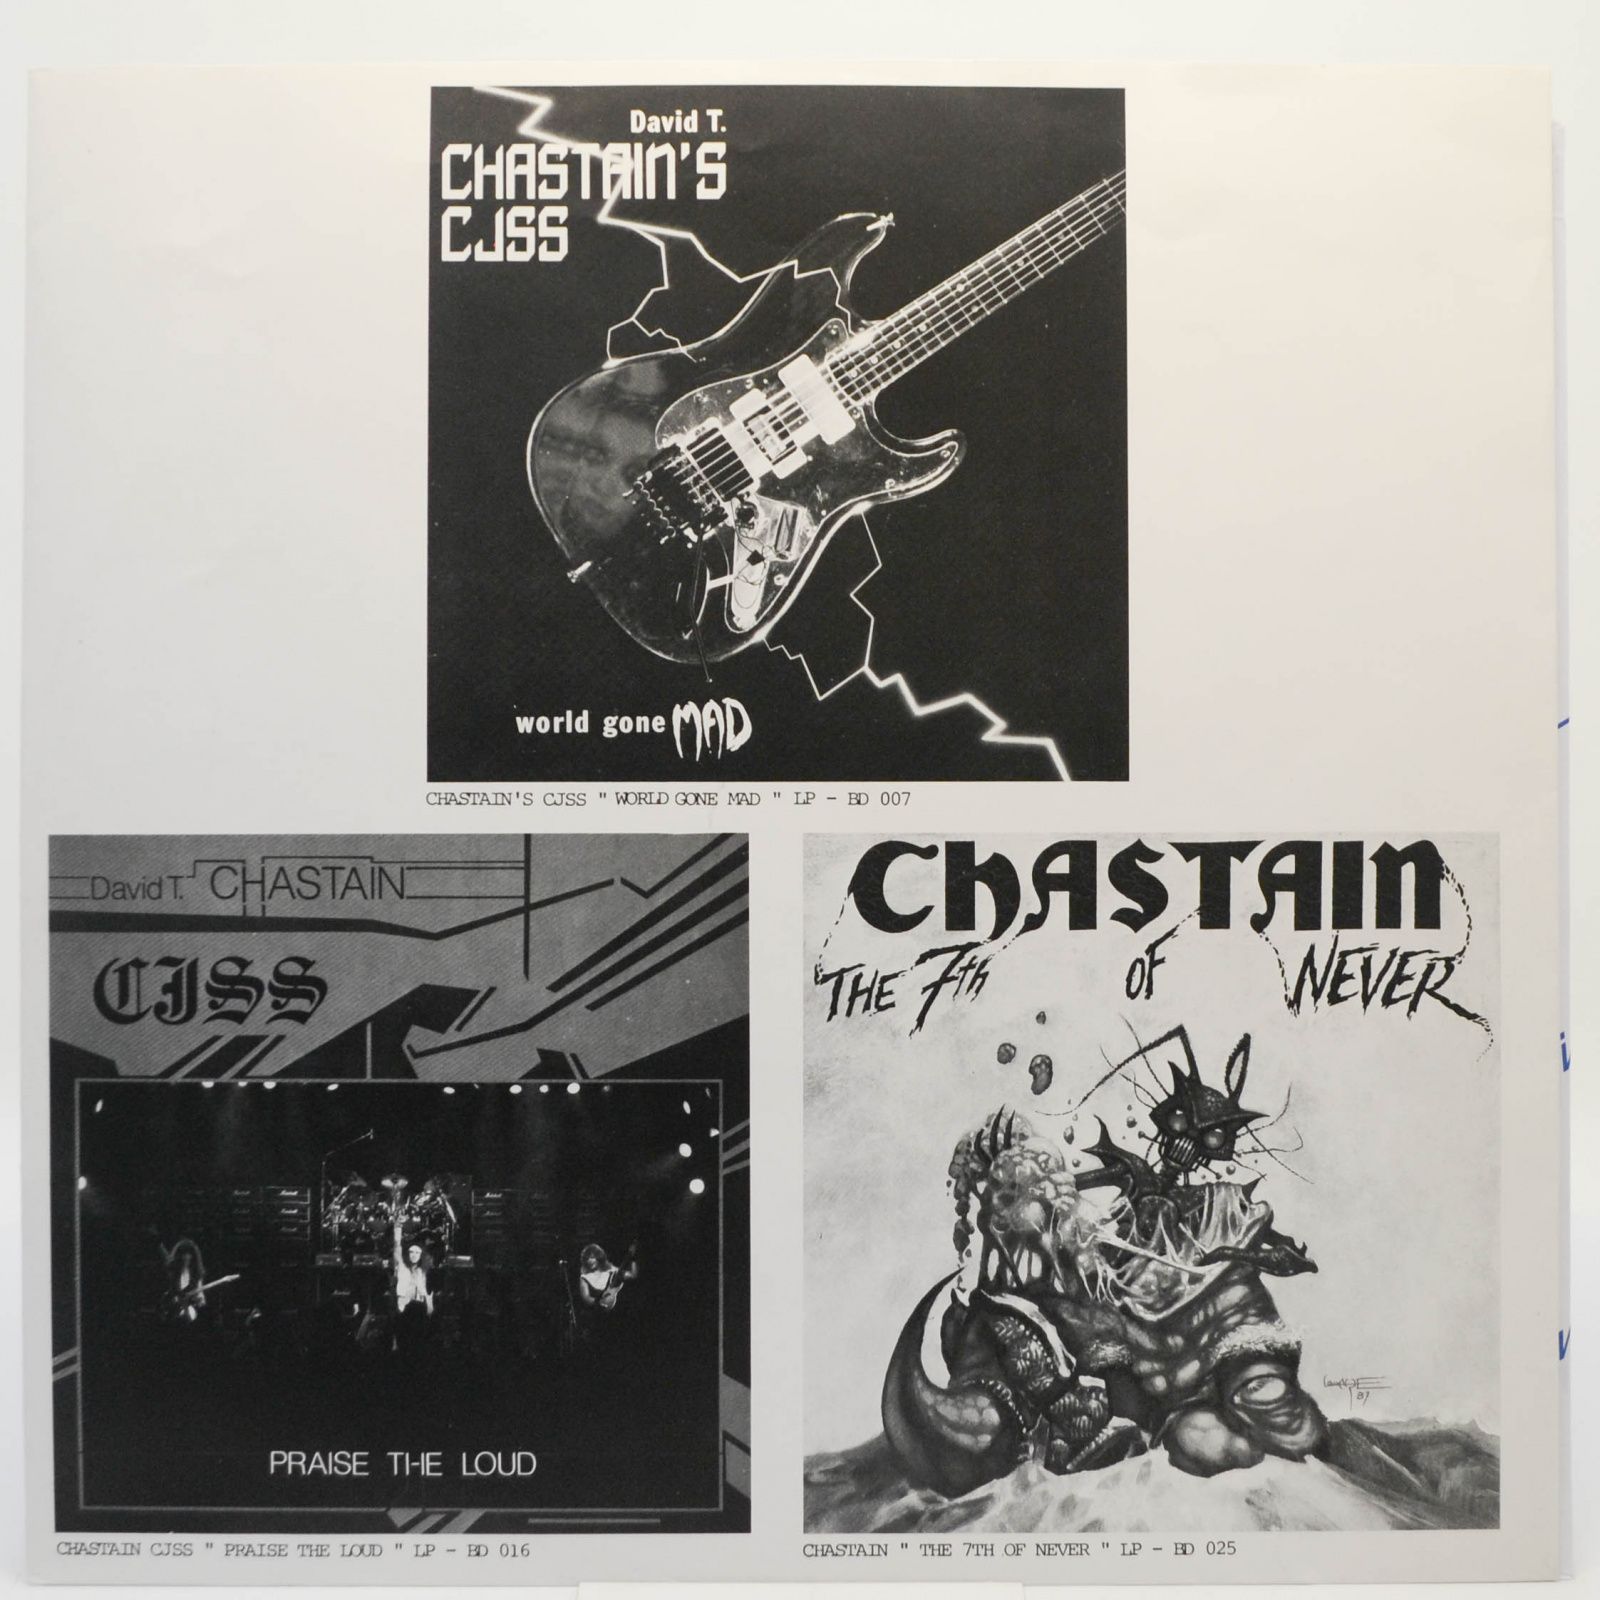 David T. Chastain — Instrumental Variations, 1987